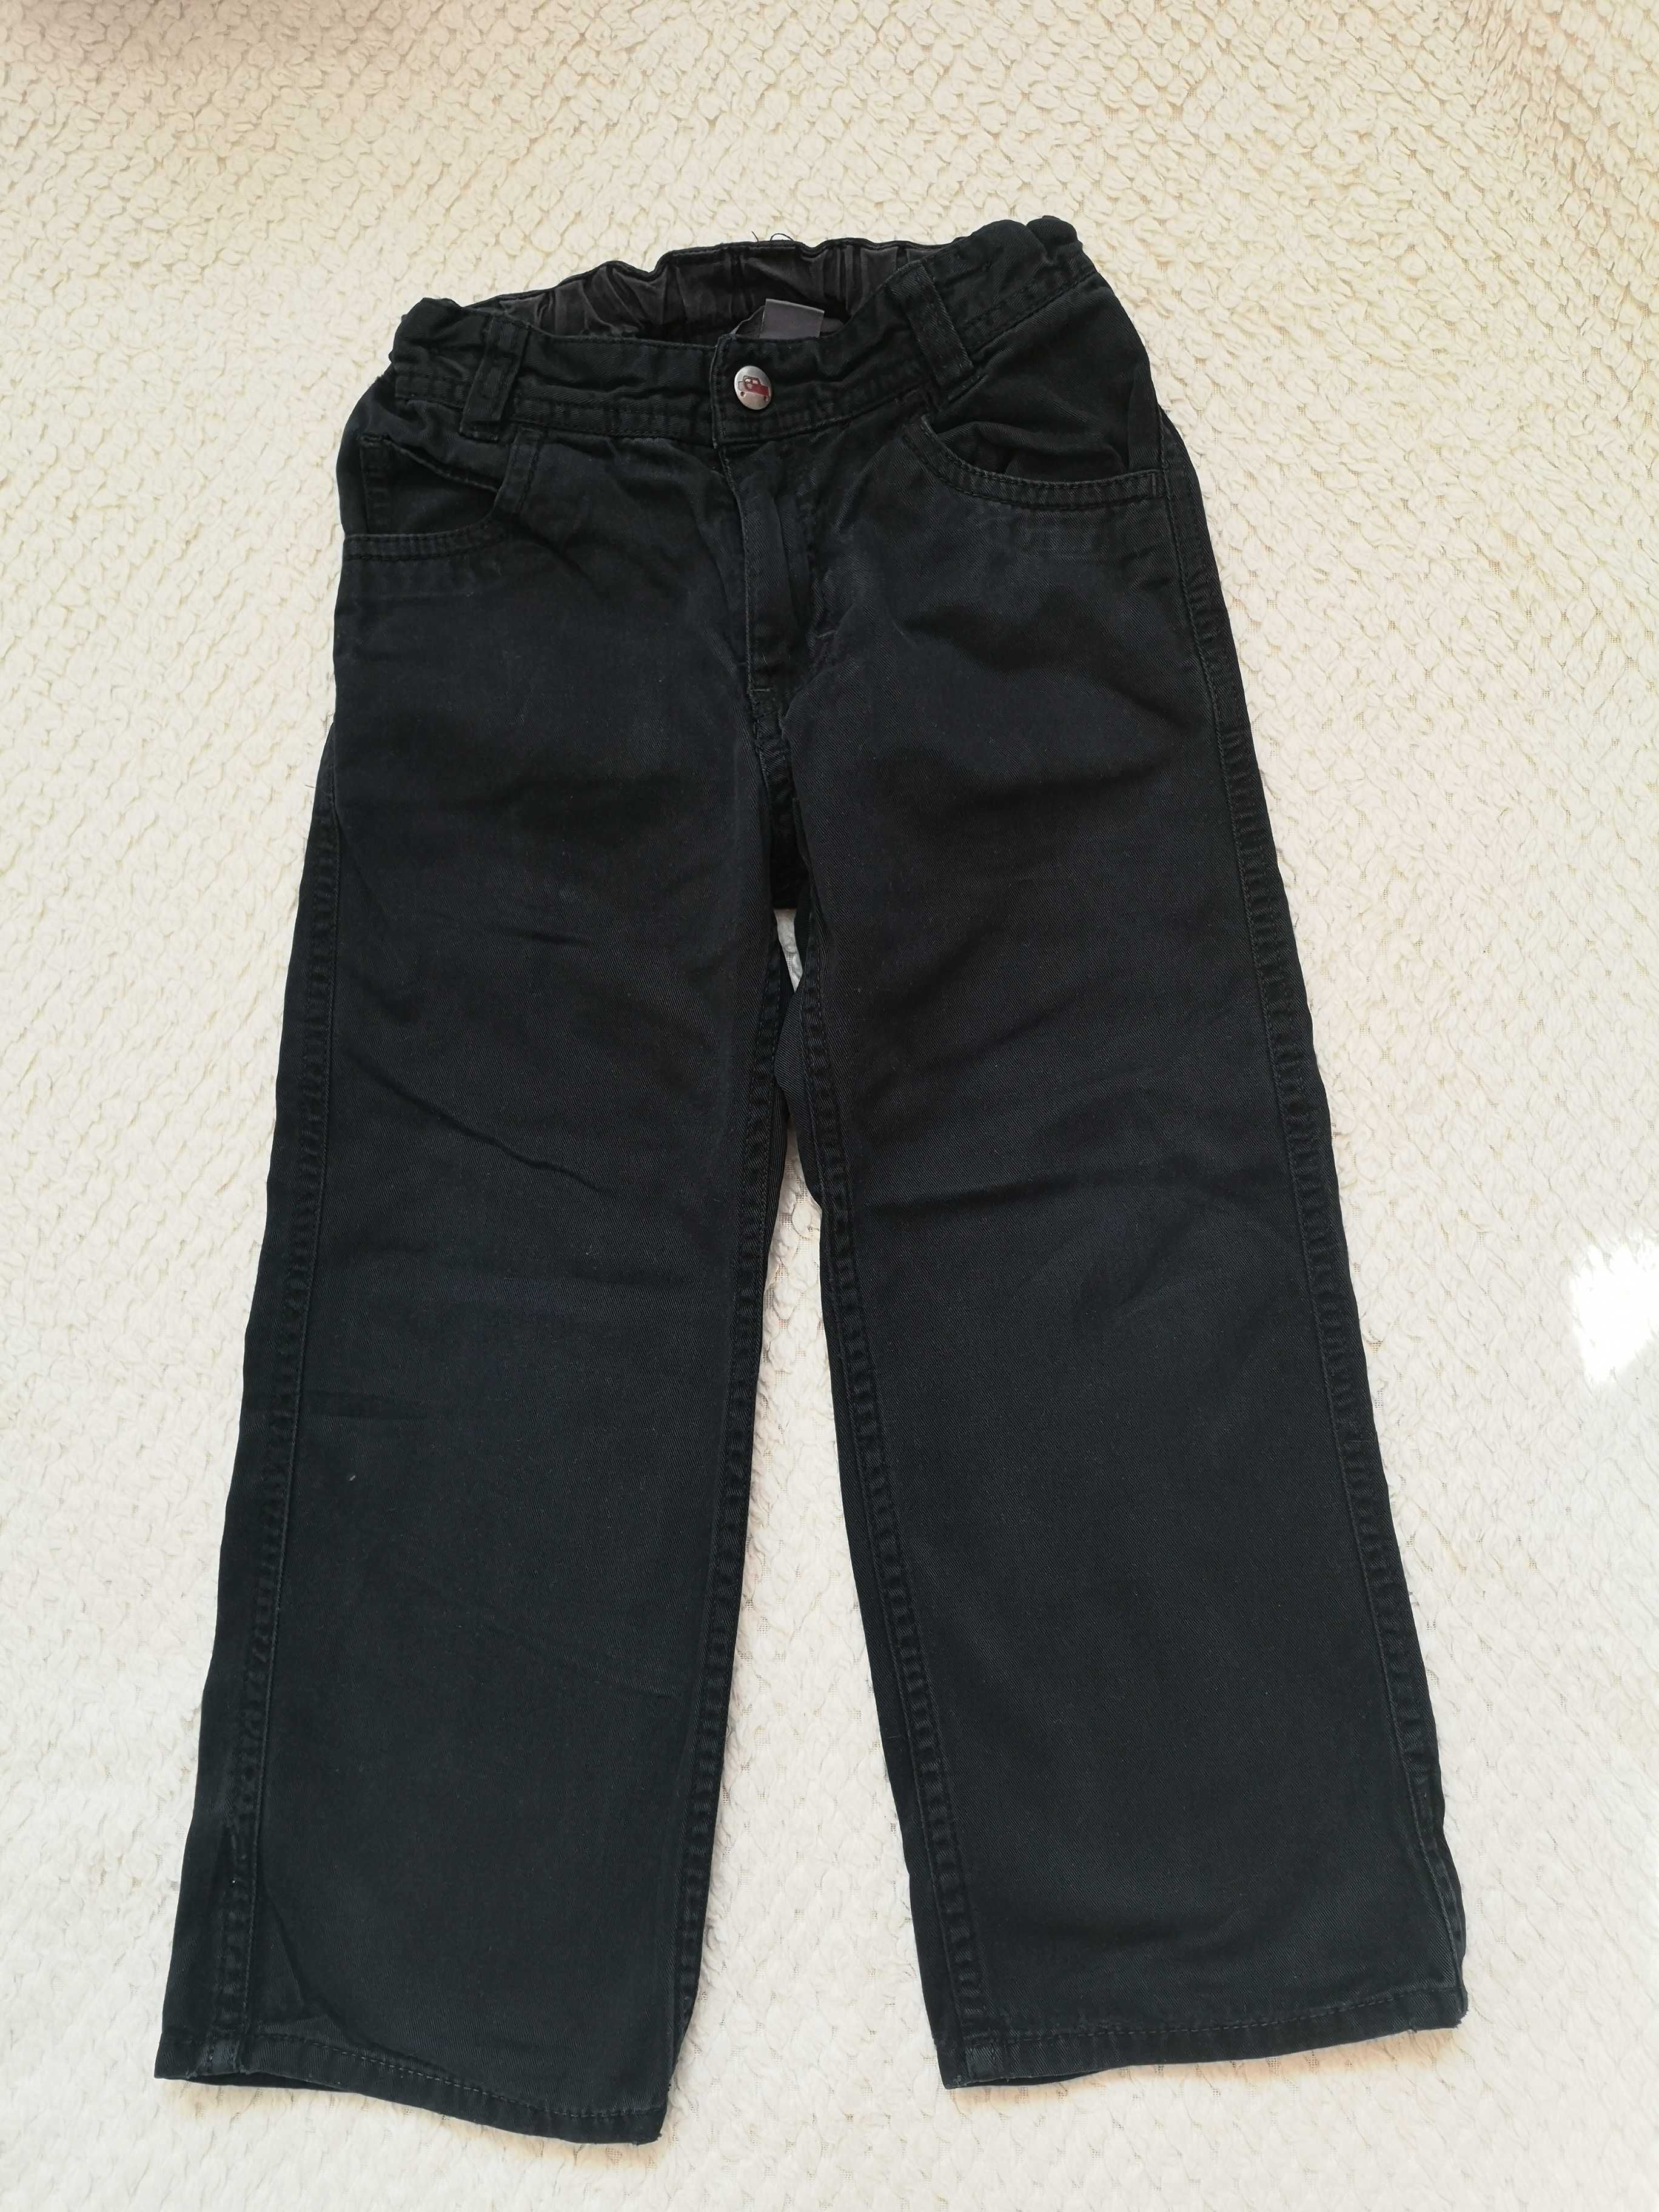 Eleganckie wygodne spodnie chinosy dla chłopca H&M rozmiar 98/104